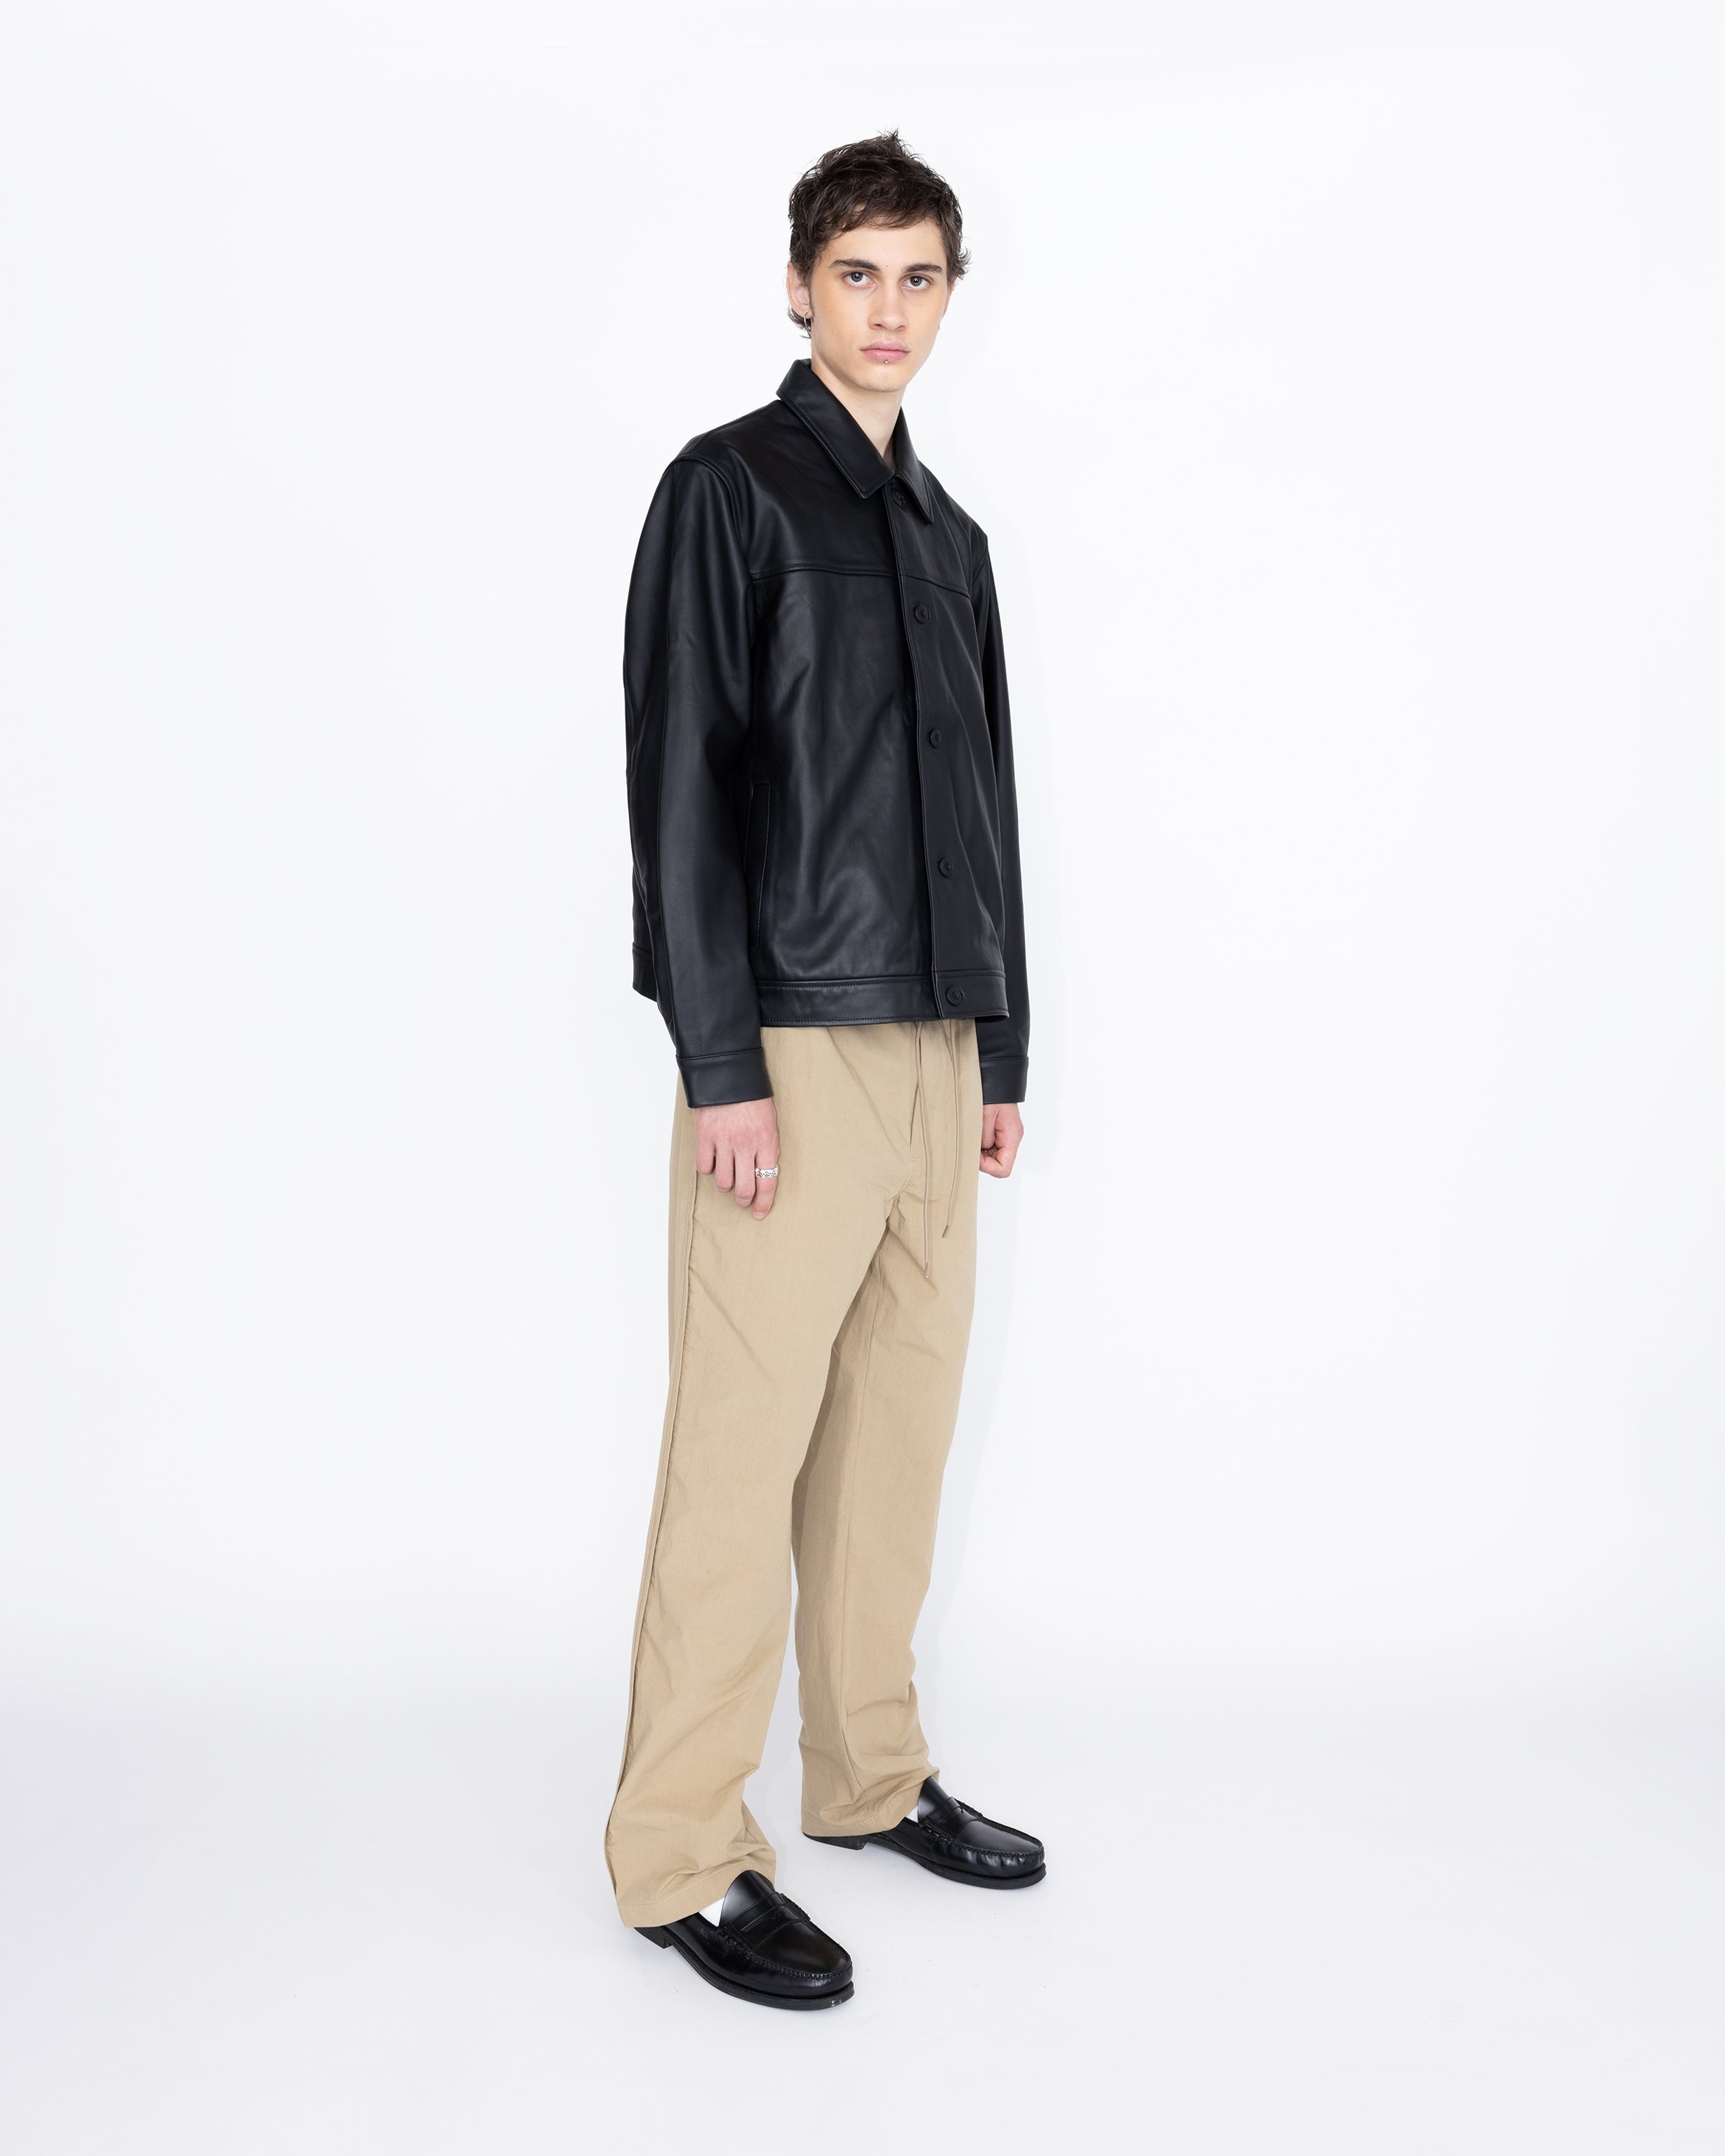 Highsnobiety HS05 - Leather Jacket Black - Clothing - Black - Image 4